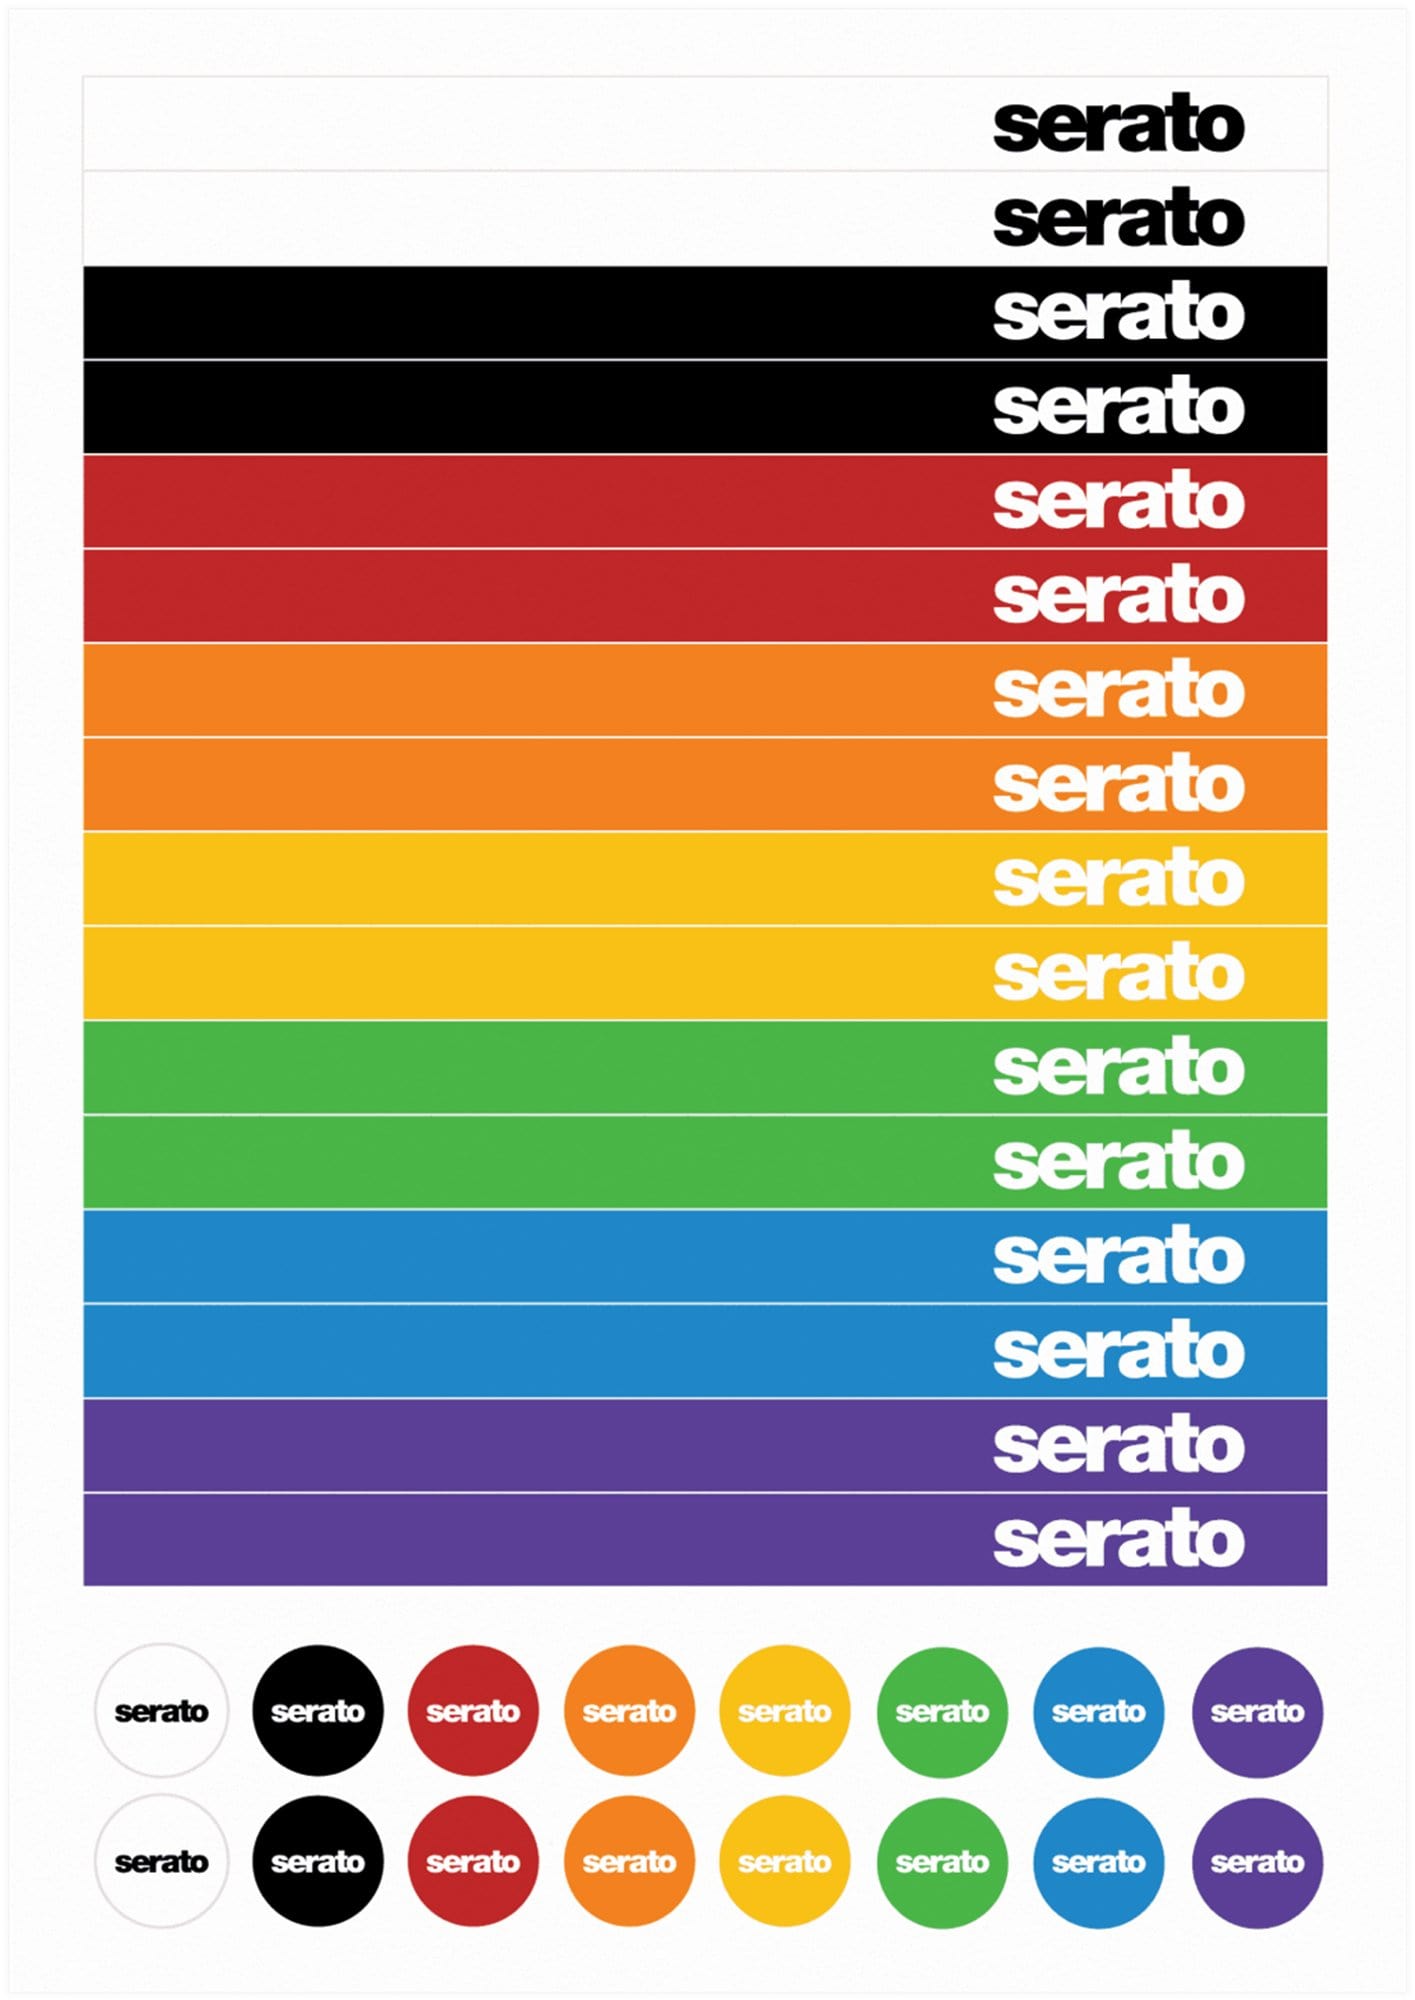 Serato Sticker Lock Vinyl - (Pair) - PSSL ProSound and Stage Lighting